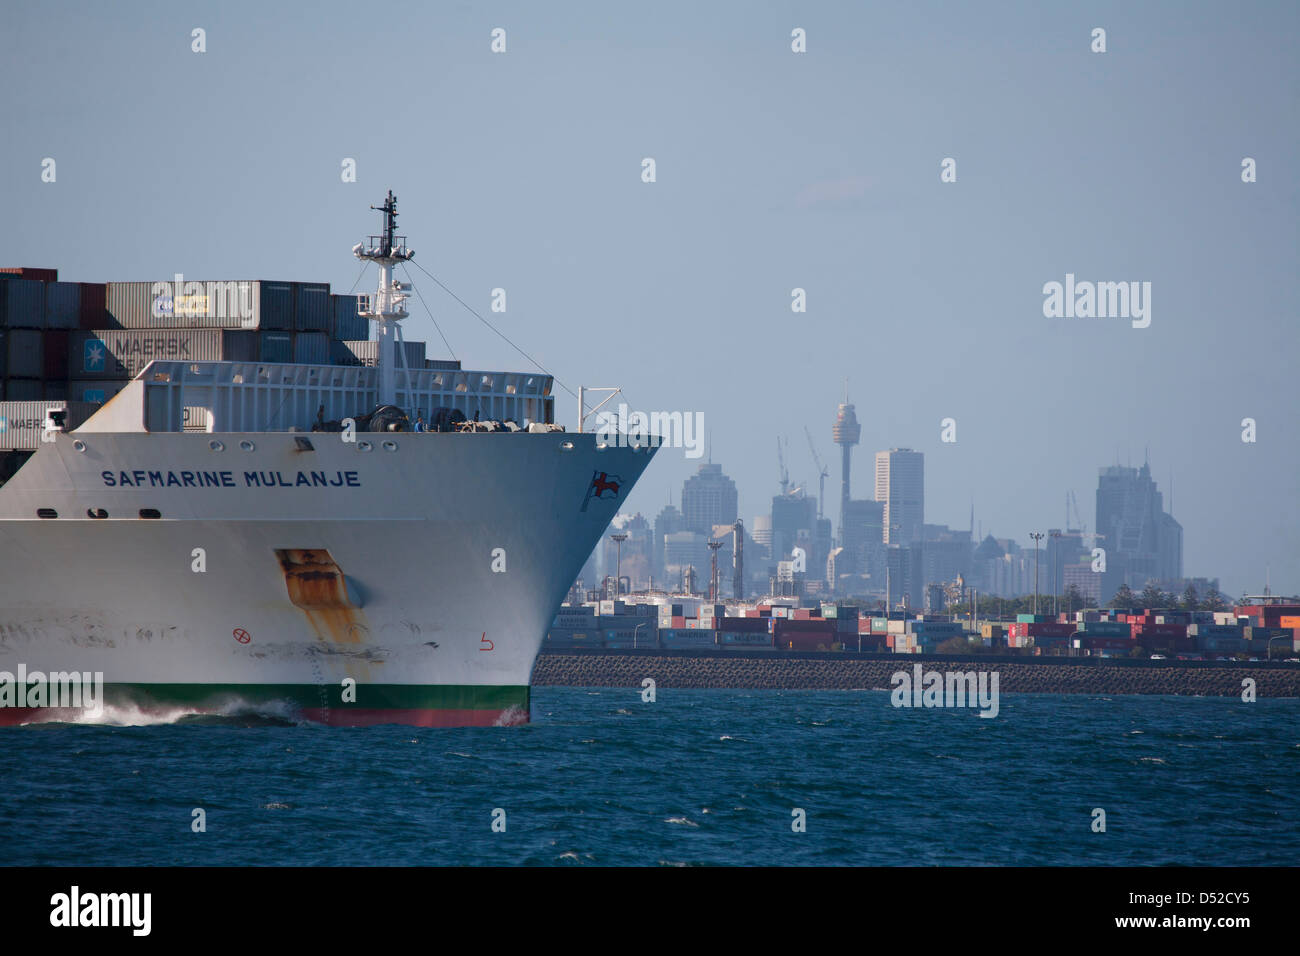 Container Ship Safmarine Mulanje departing Port Botany Sydney Australia Stock Photo